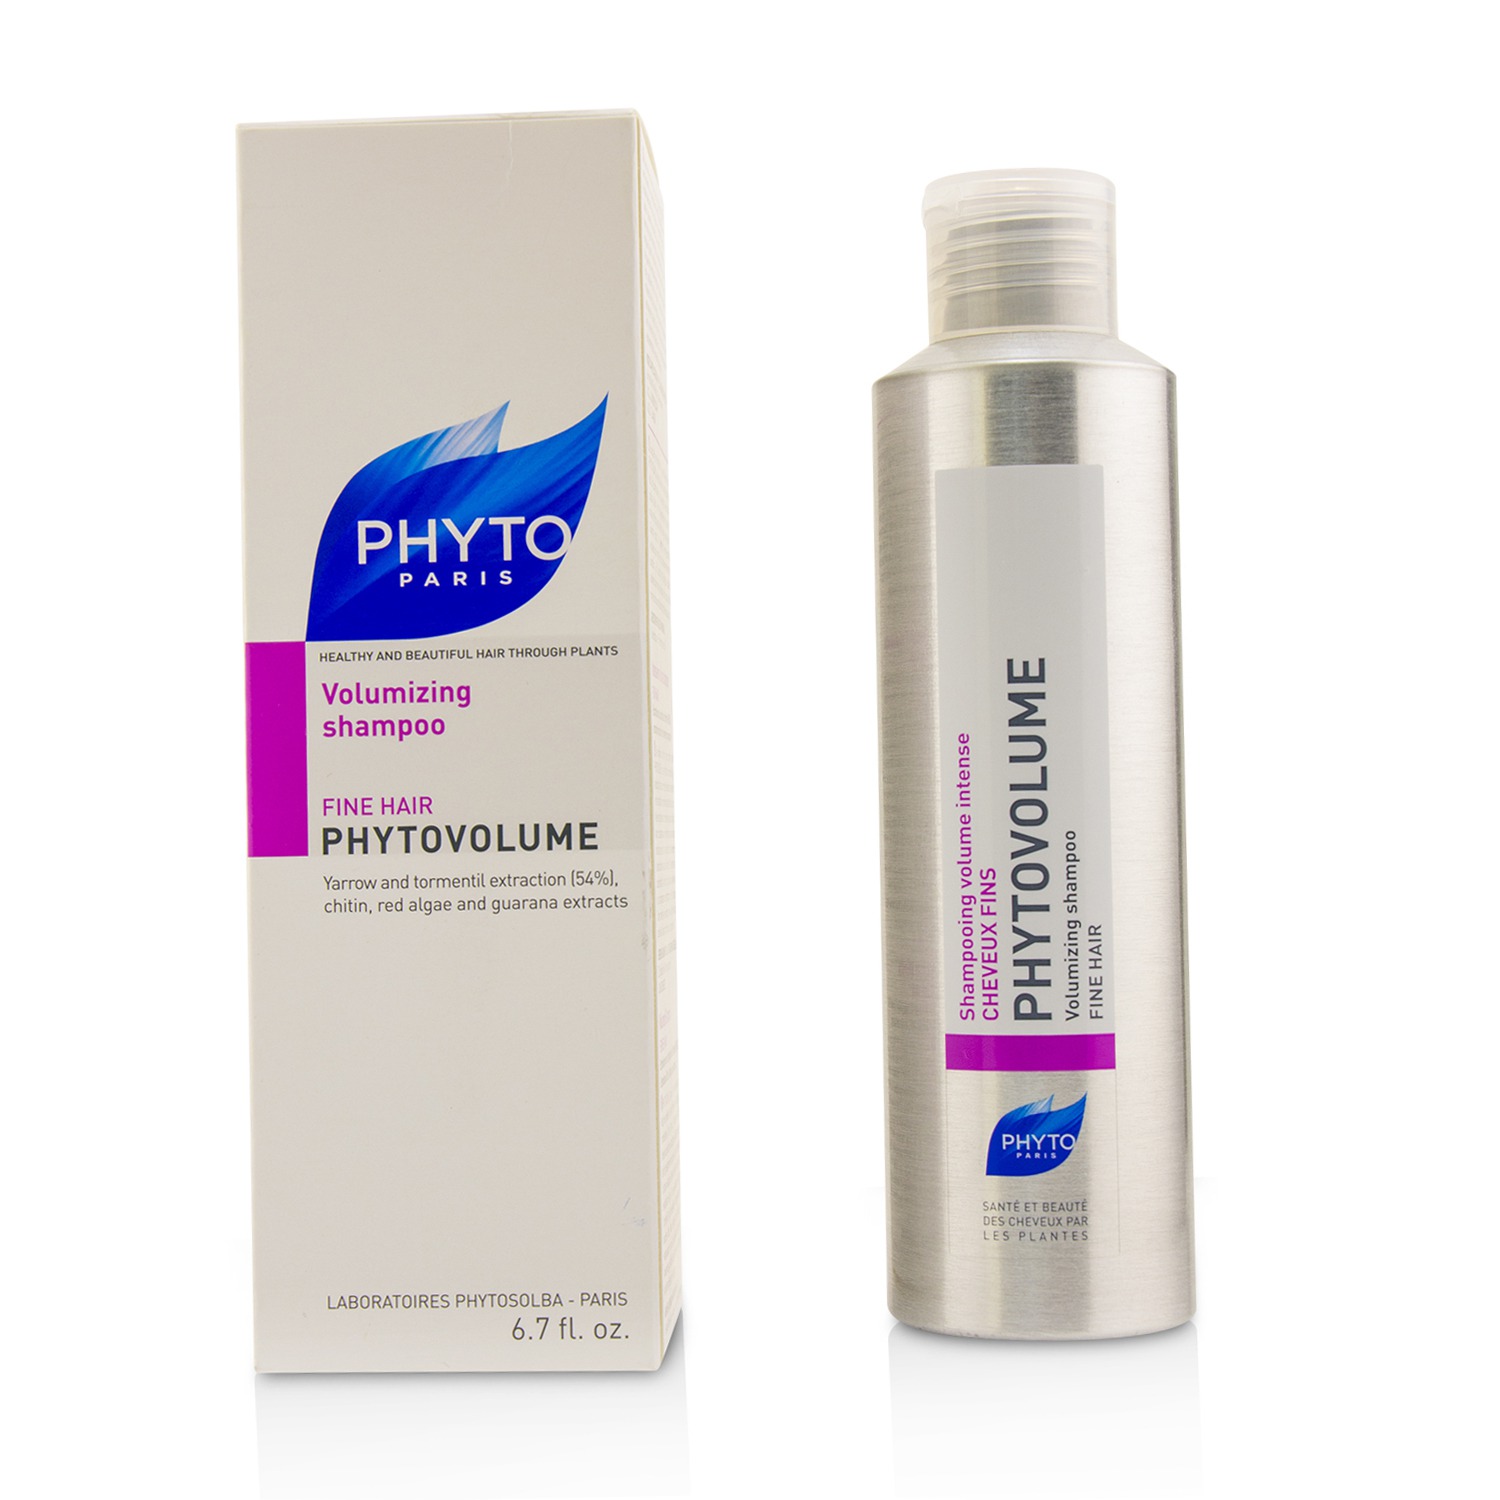 Phytovolume Volumizing Shampoo (Fine Hair) Phyto Image